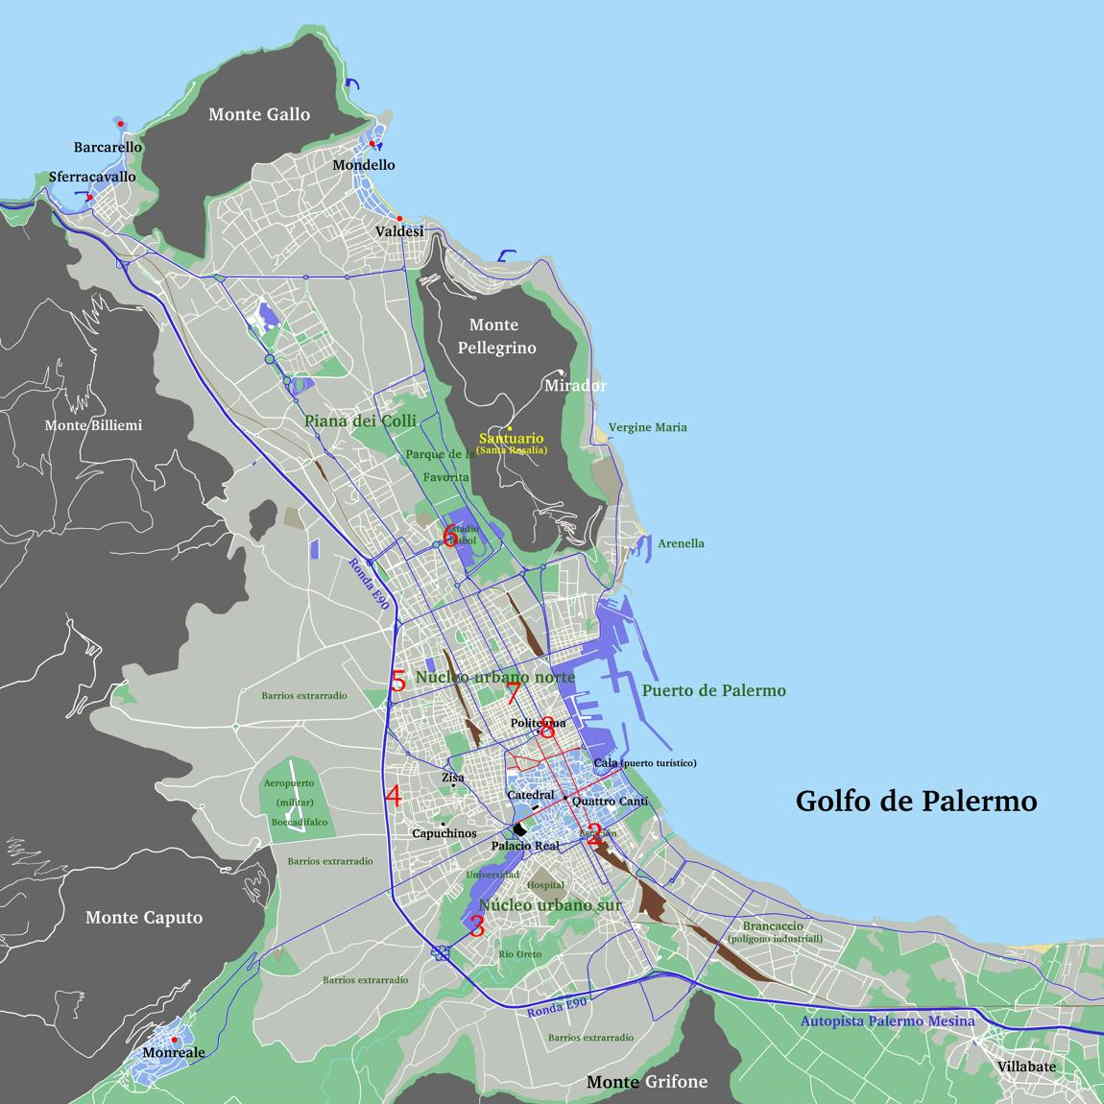 Mapa centro urbano Palermo con ubicación terminales buses urbanos